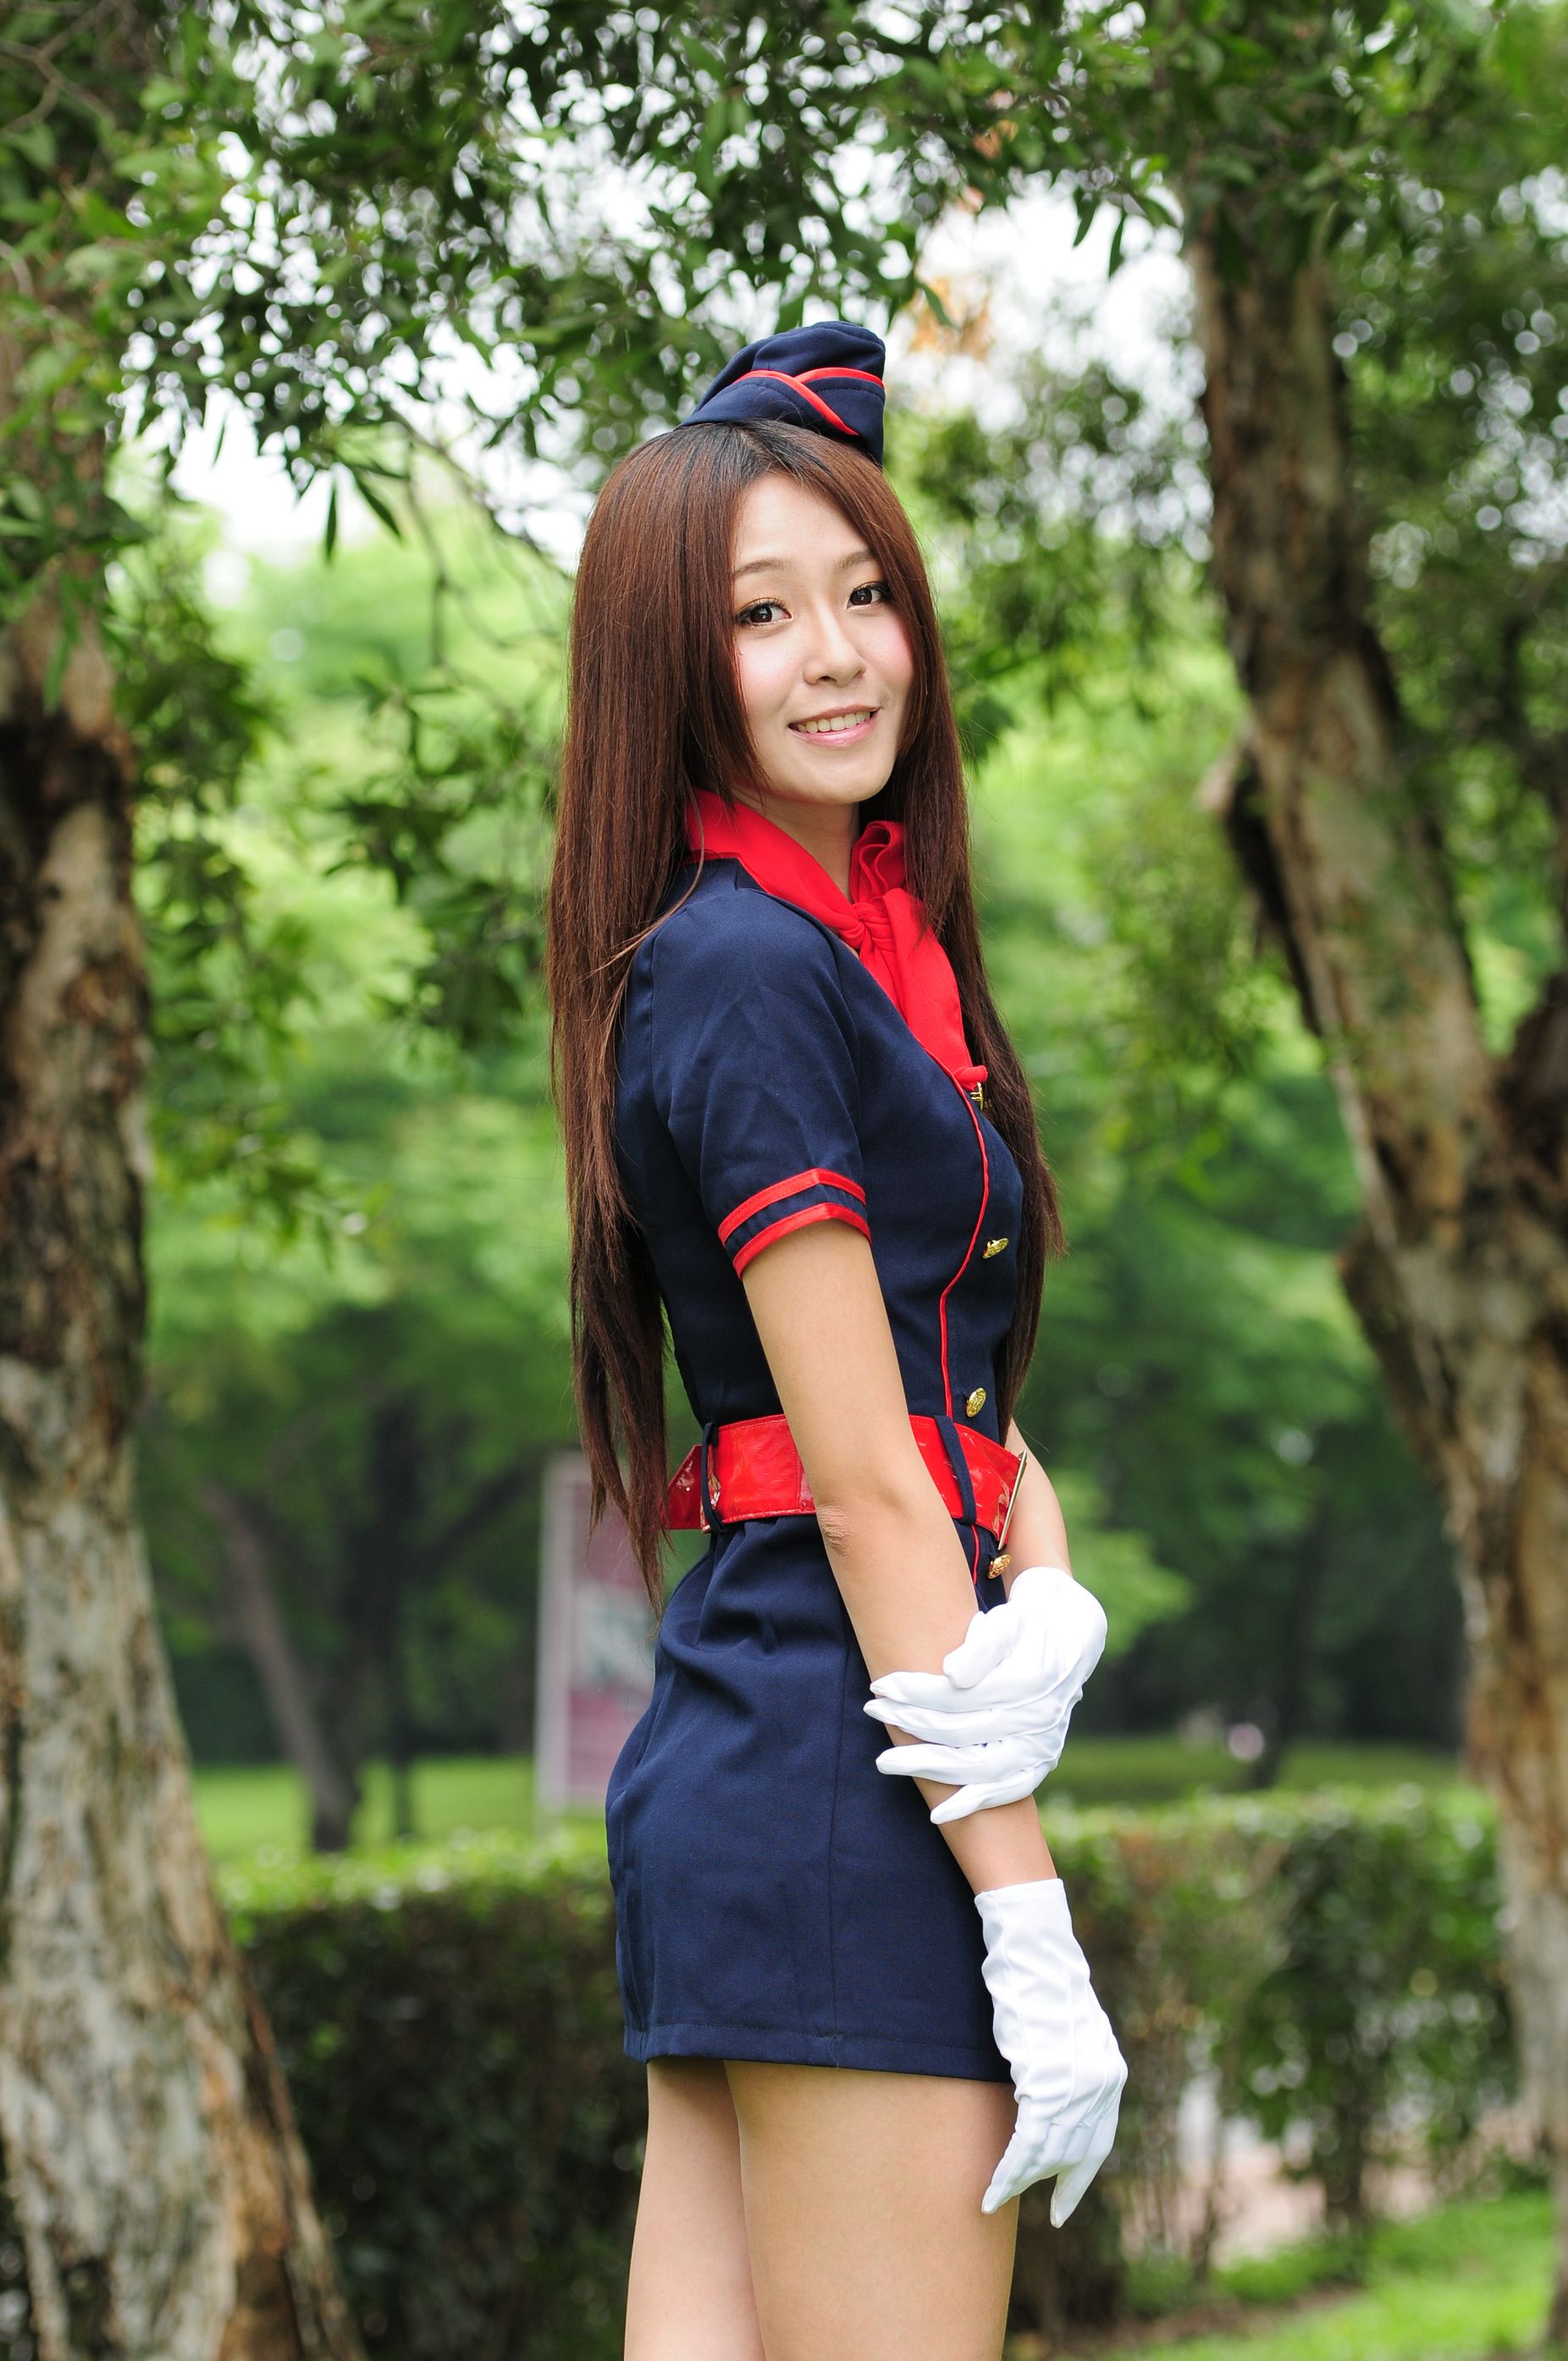 Winnie Snow / Zhuang Yuhui “Small Qingxin School Uniforms” Photo Album